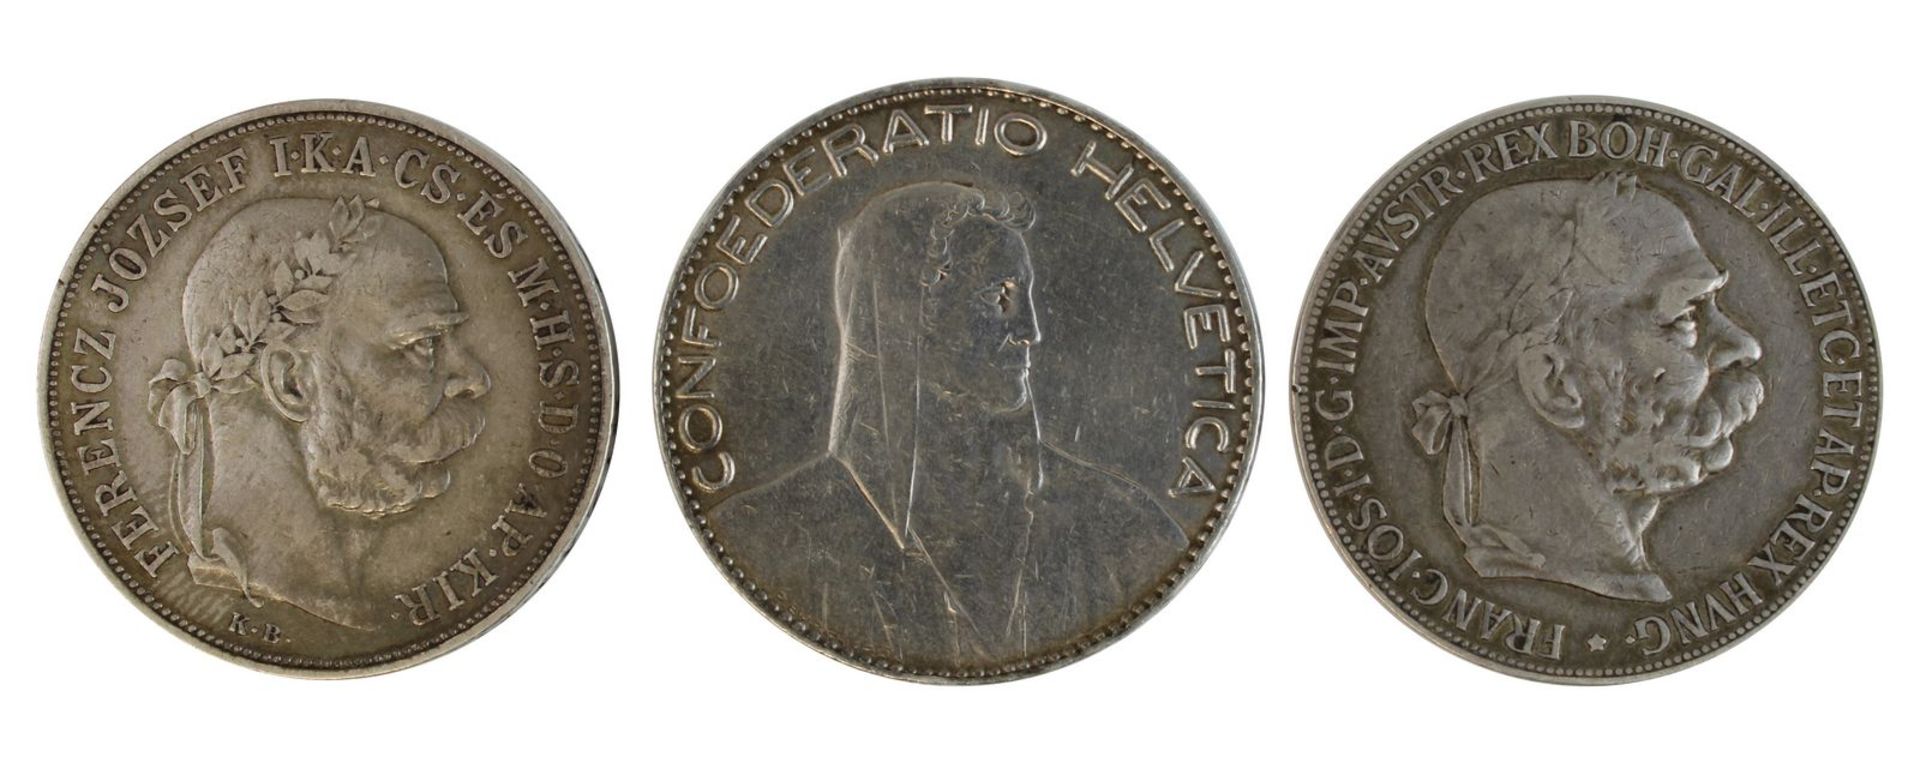 Drei Silbermünzen, Österreich/Ungarn und Schweiz, 1900 - 1923: Münze zu 5 Kronen, Österreich 1900,